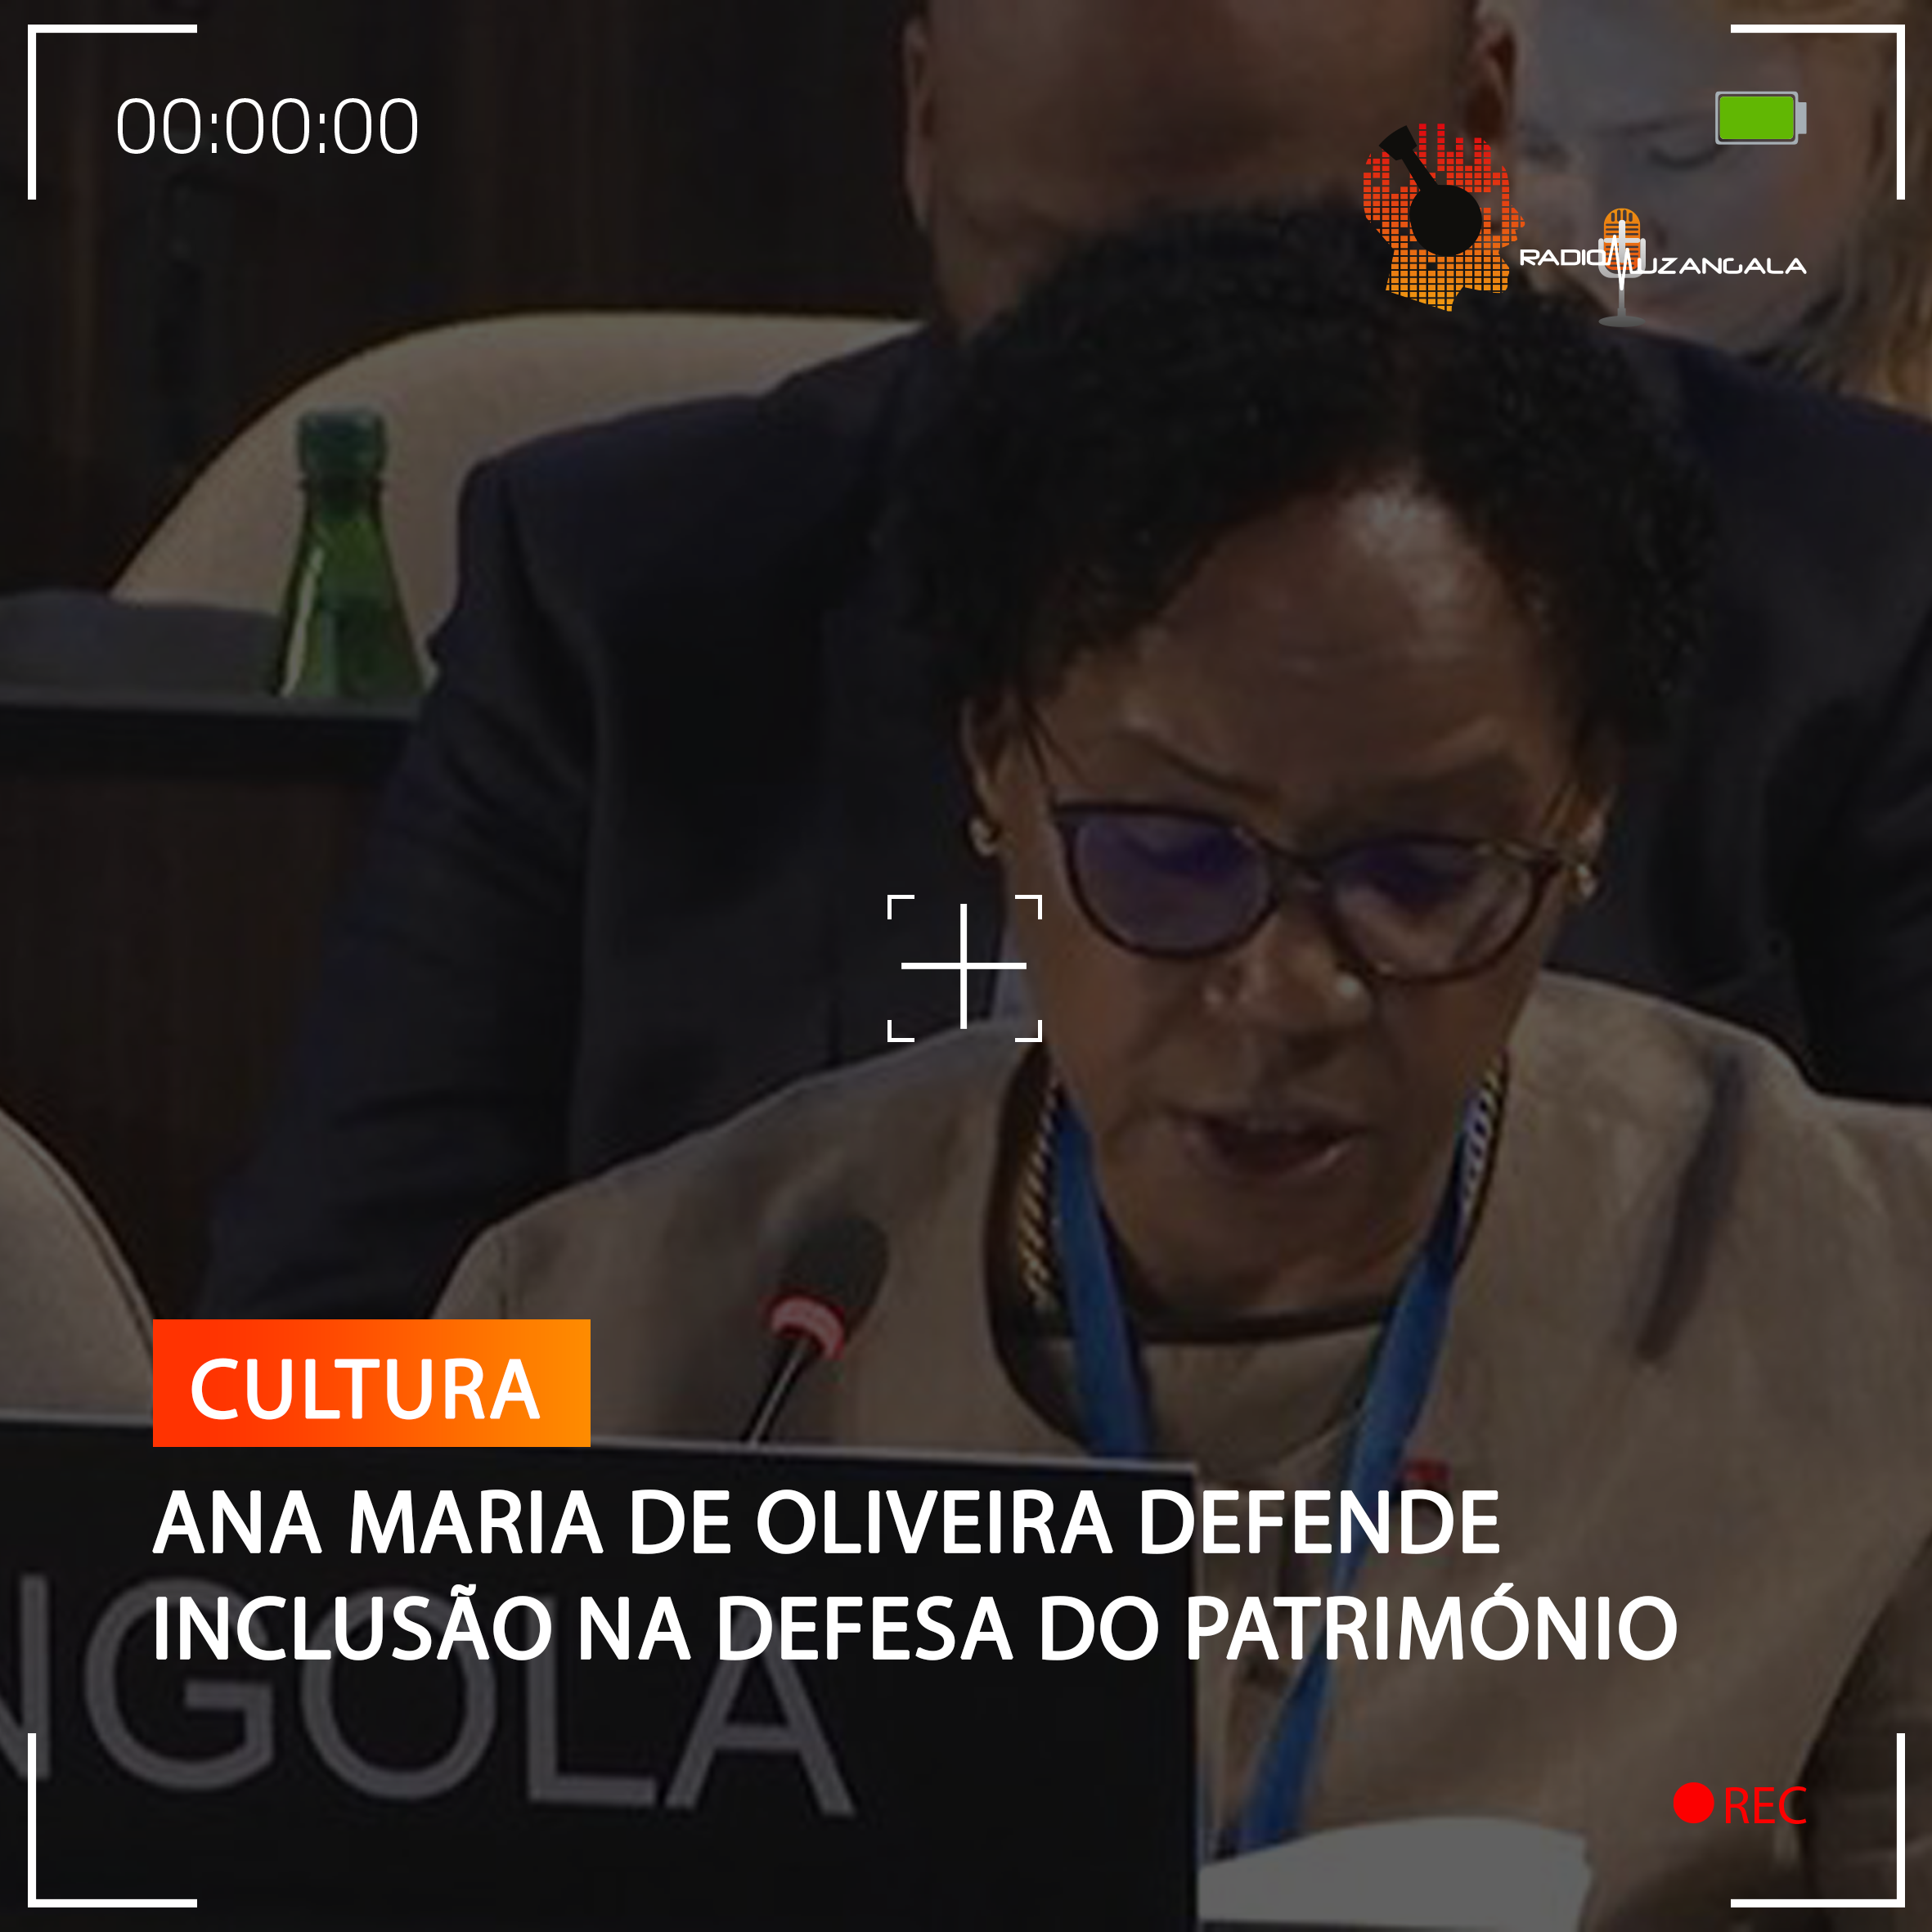  ANA MARIA DE OLIVEIRA DEFENDE INCLUSÃO NA DEFESA DO PATRIMÓNIO